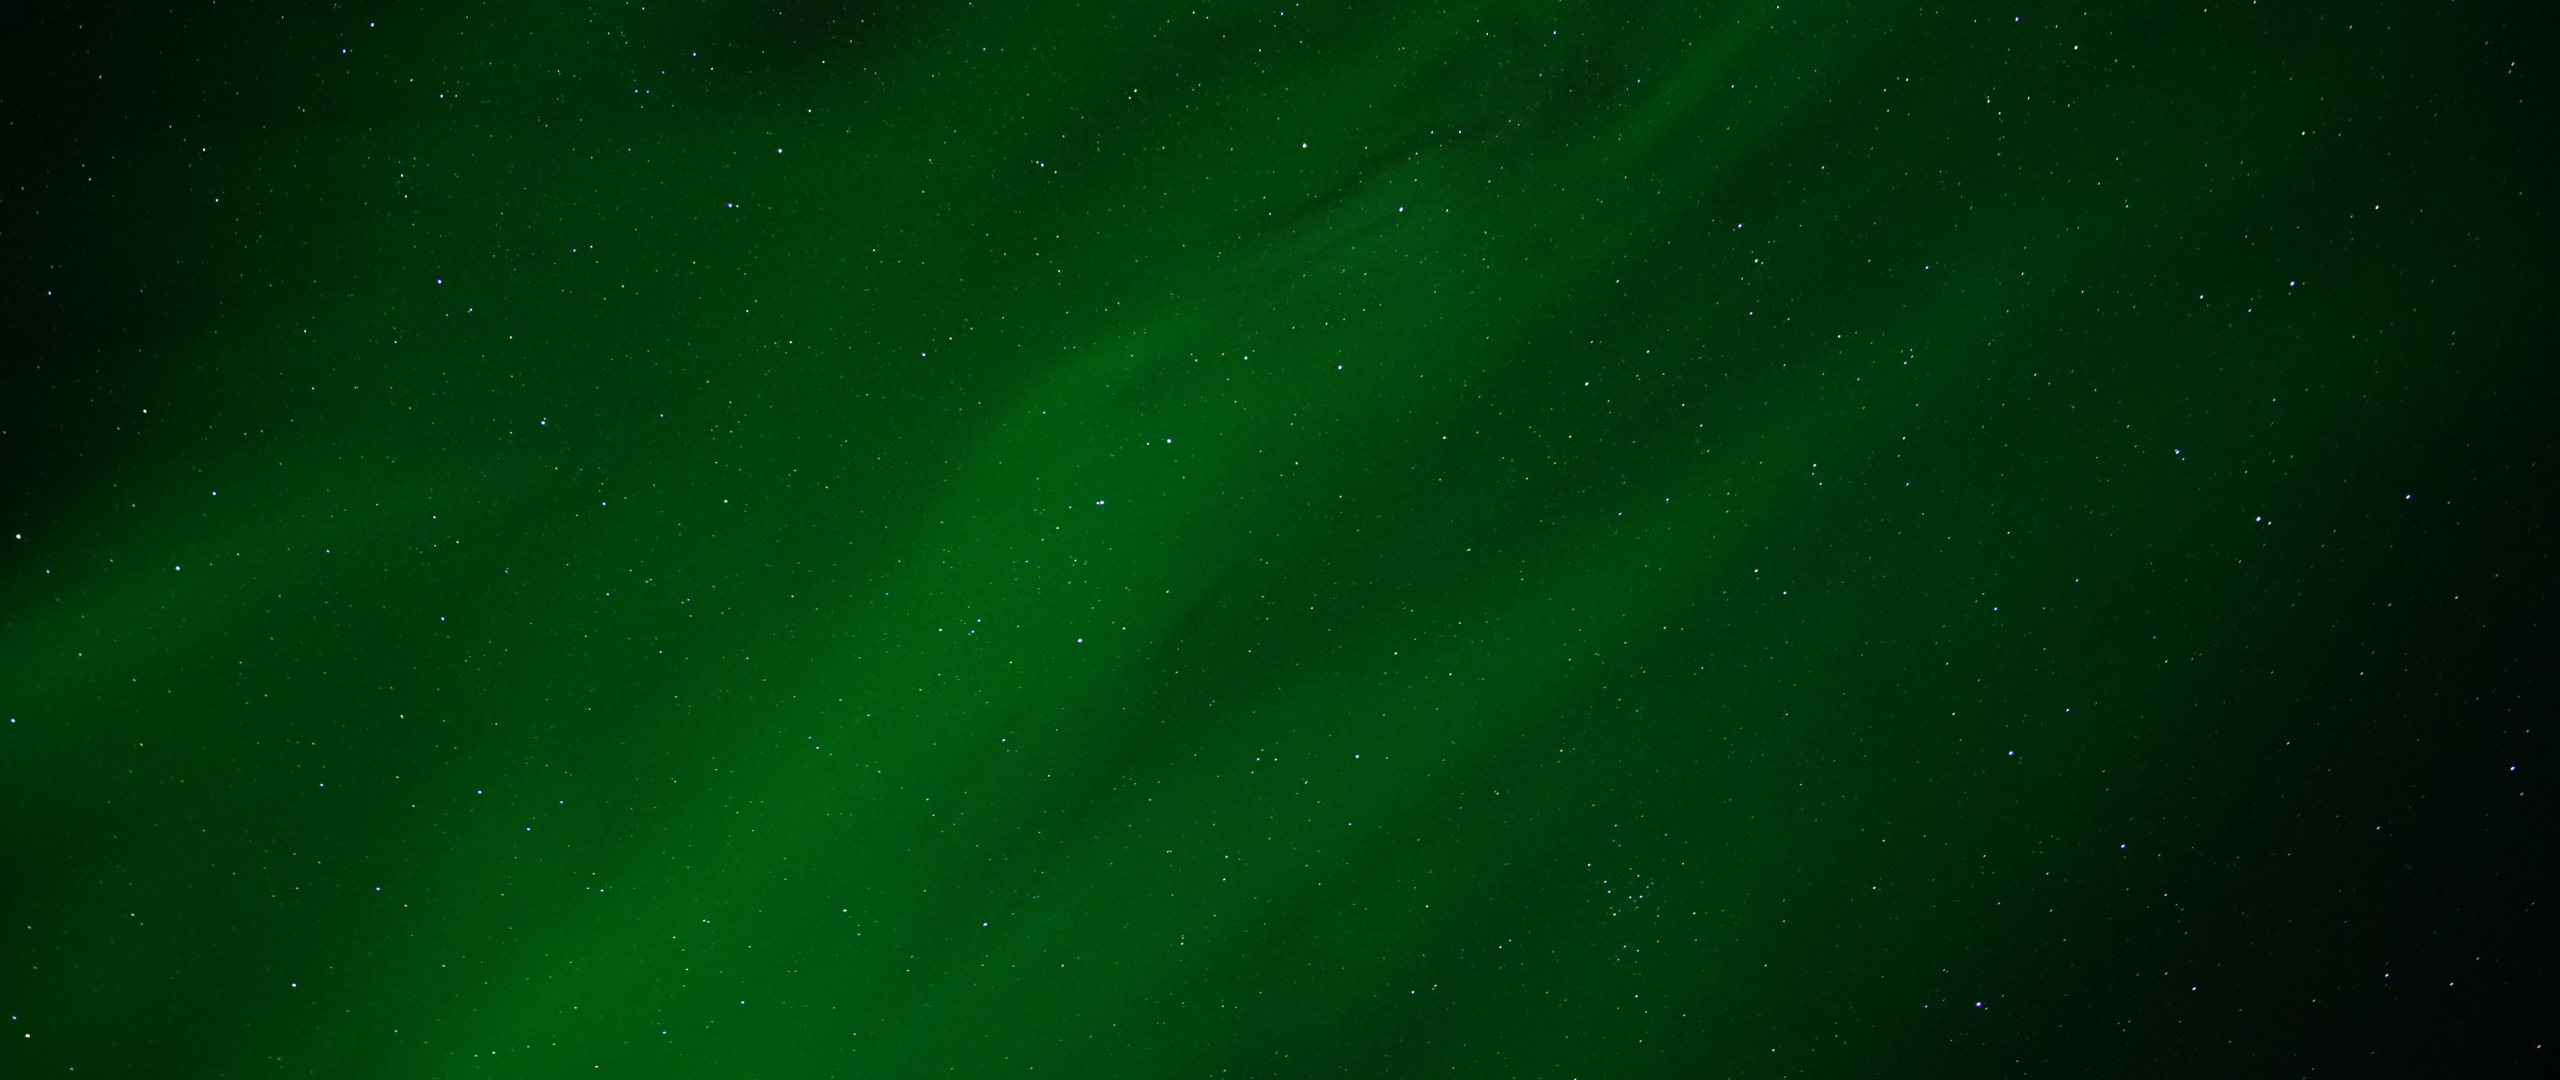 Aurora là hiện tượng ánh sáng độc đáo và rực rỡ trên bầu trời đêm. Hãy cùng khám phá bức ảnh liên quan đến từ khóa \